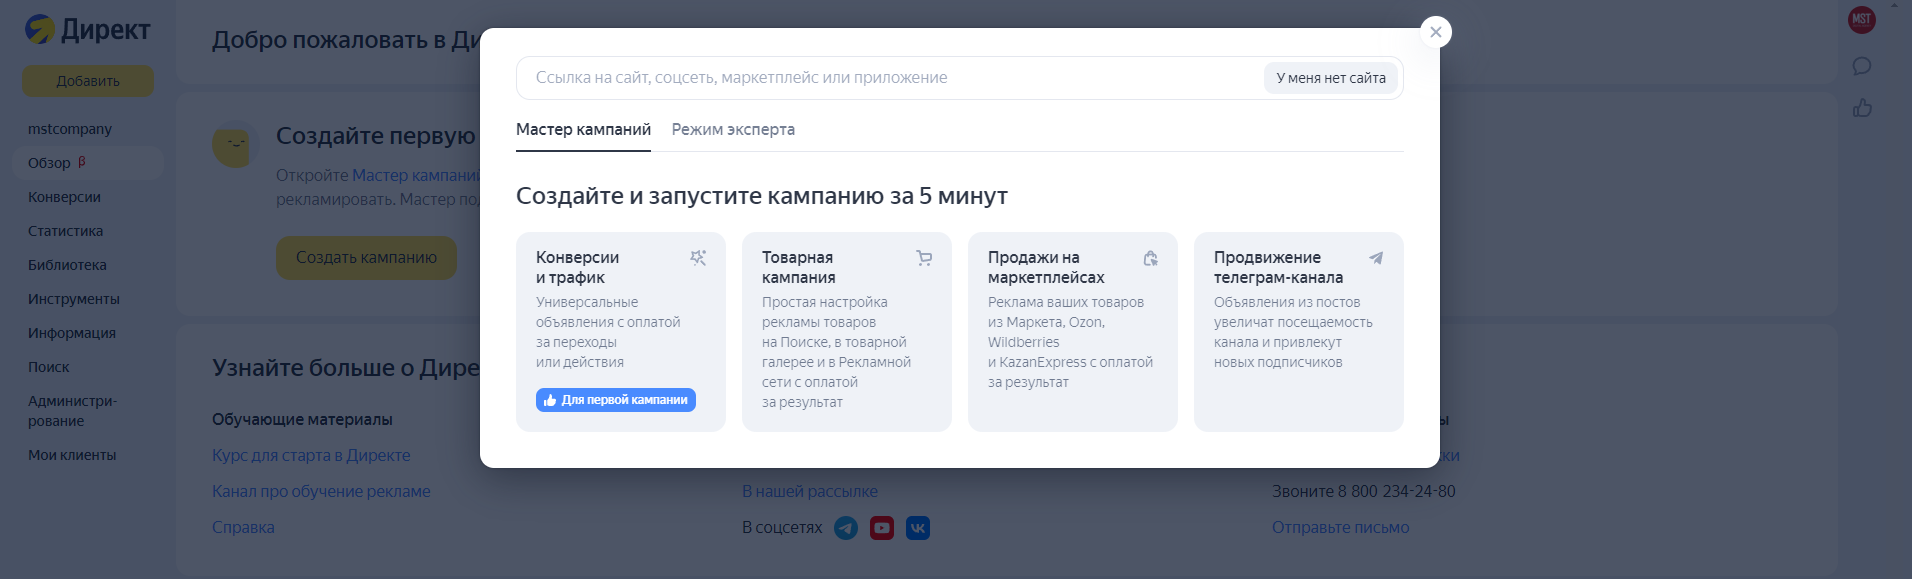 Скриншот из кабинета Яндекс Директ